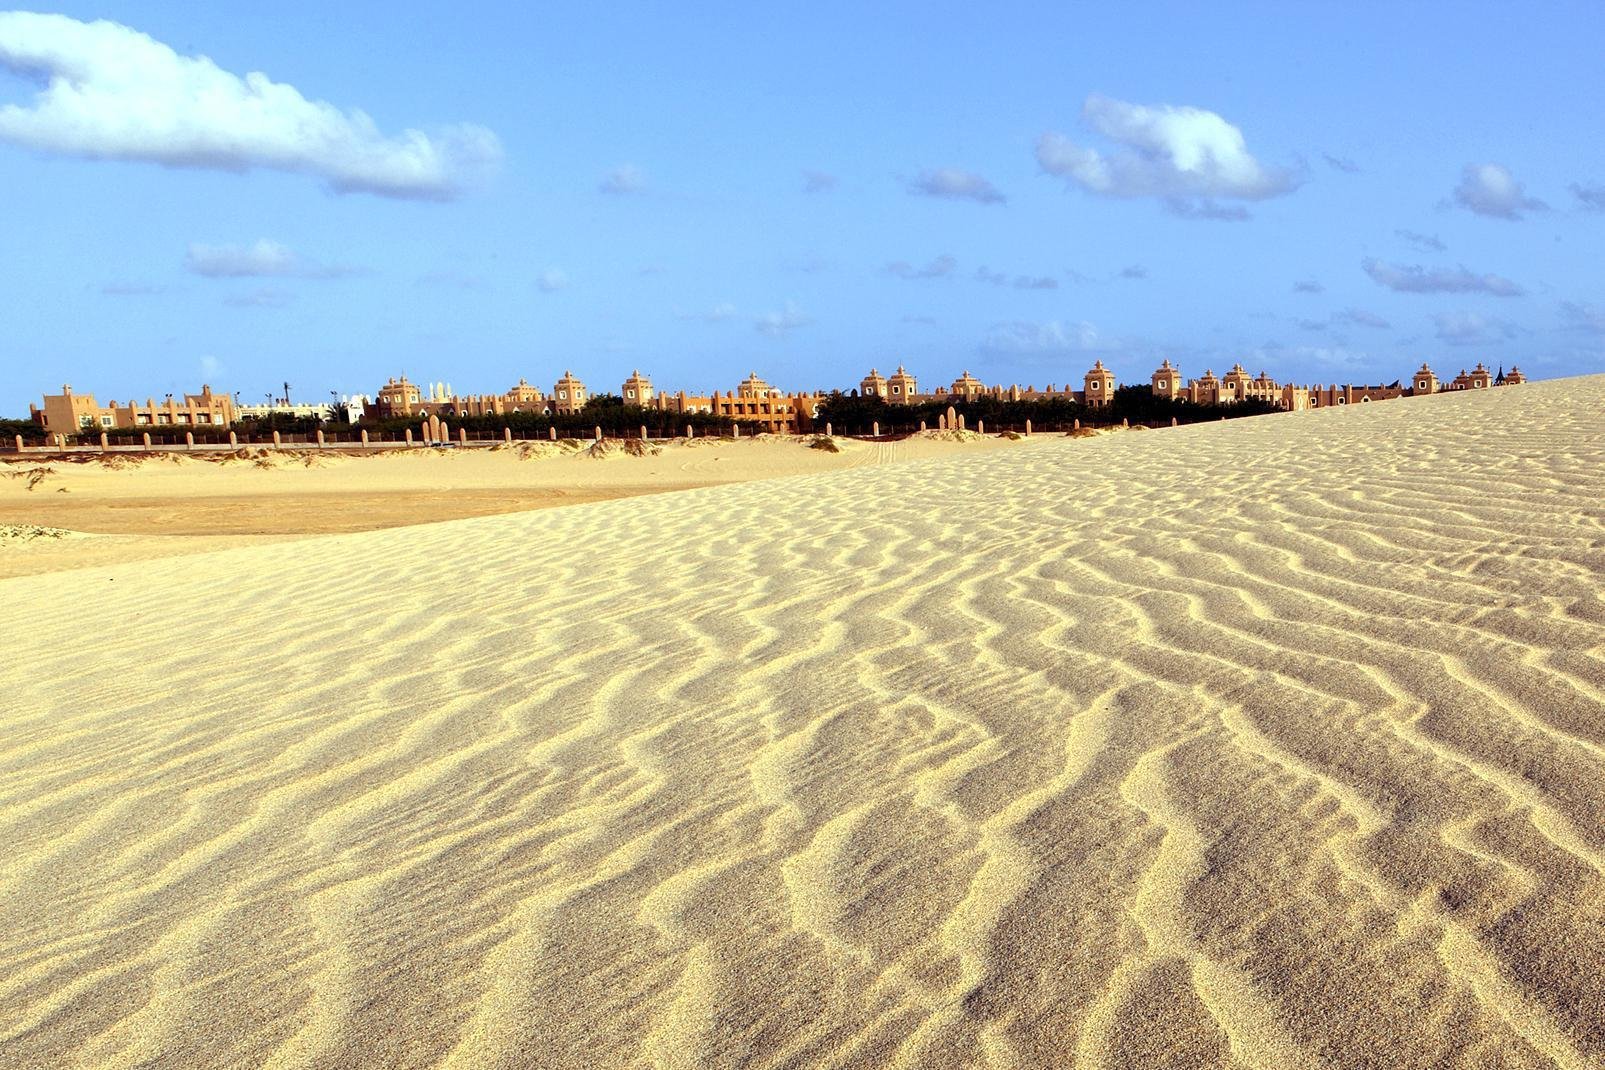 Sal è l'isola più conosciuta di Capo Verde, grazie al suo aeroporto internazionale. Non si viene a Sal per i paesaggi, il rilievo è piatto e l'isola è arida e secca. Il punto più alto dell'isola è il Monte Grande (406 metri). Ma Sal vanta bellissime spiagge di sabbia fine. L'isola si estende per 29,7 km da nord a sud e per 11,8 km da est ad ovest. Oggi l'isola conta il maggior numero ...